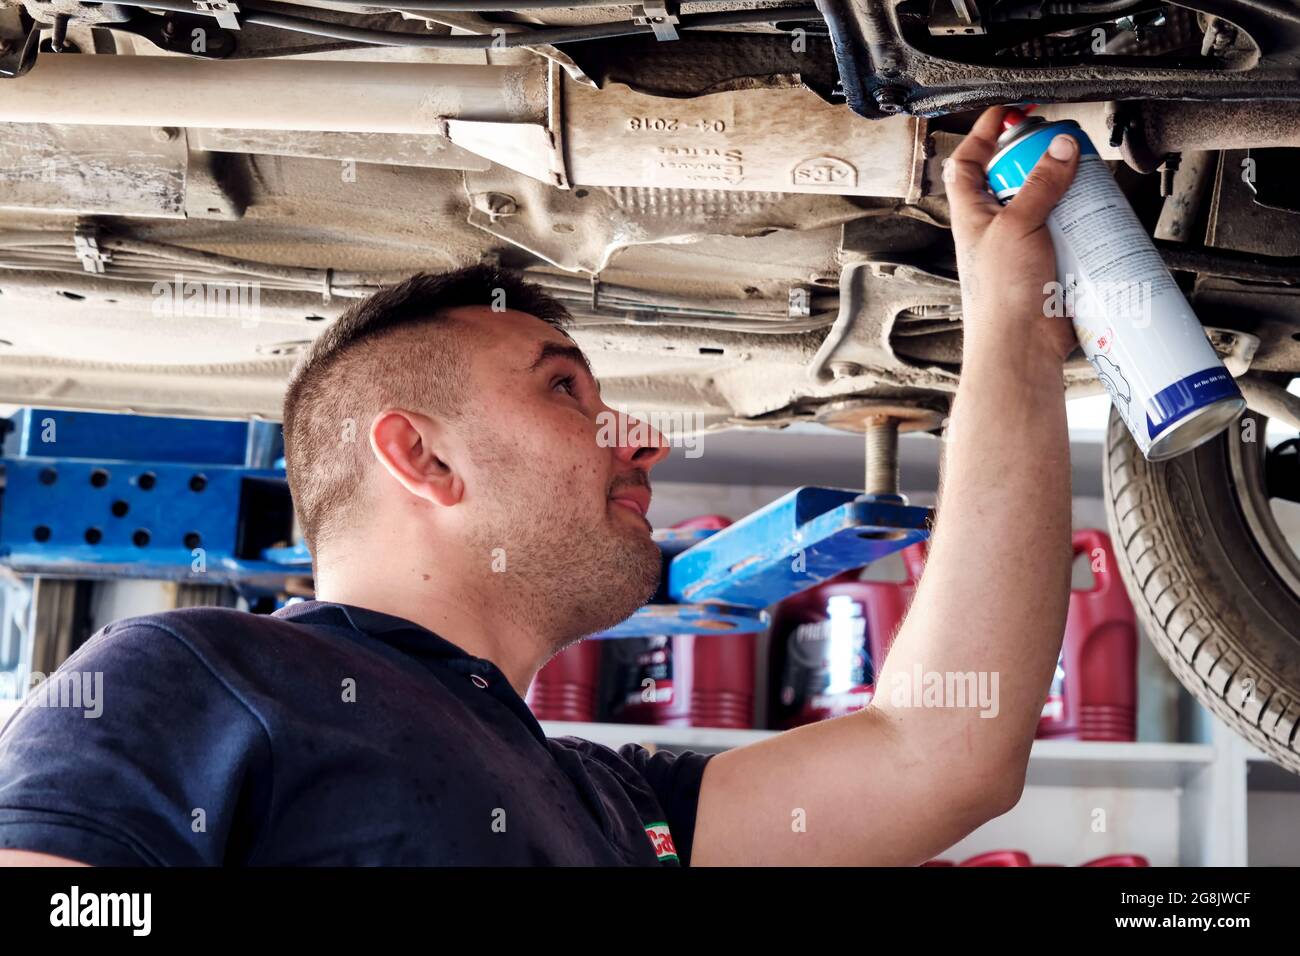 Urla, İzmir, Turquie - juin 2021 : mécanicien automobile utilisant un spray pour les parties inférieures d'une voiture soulevée à la station de réparation automobile. Banque D'Images